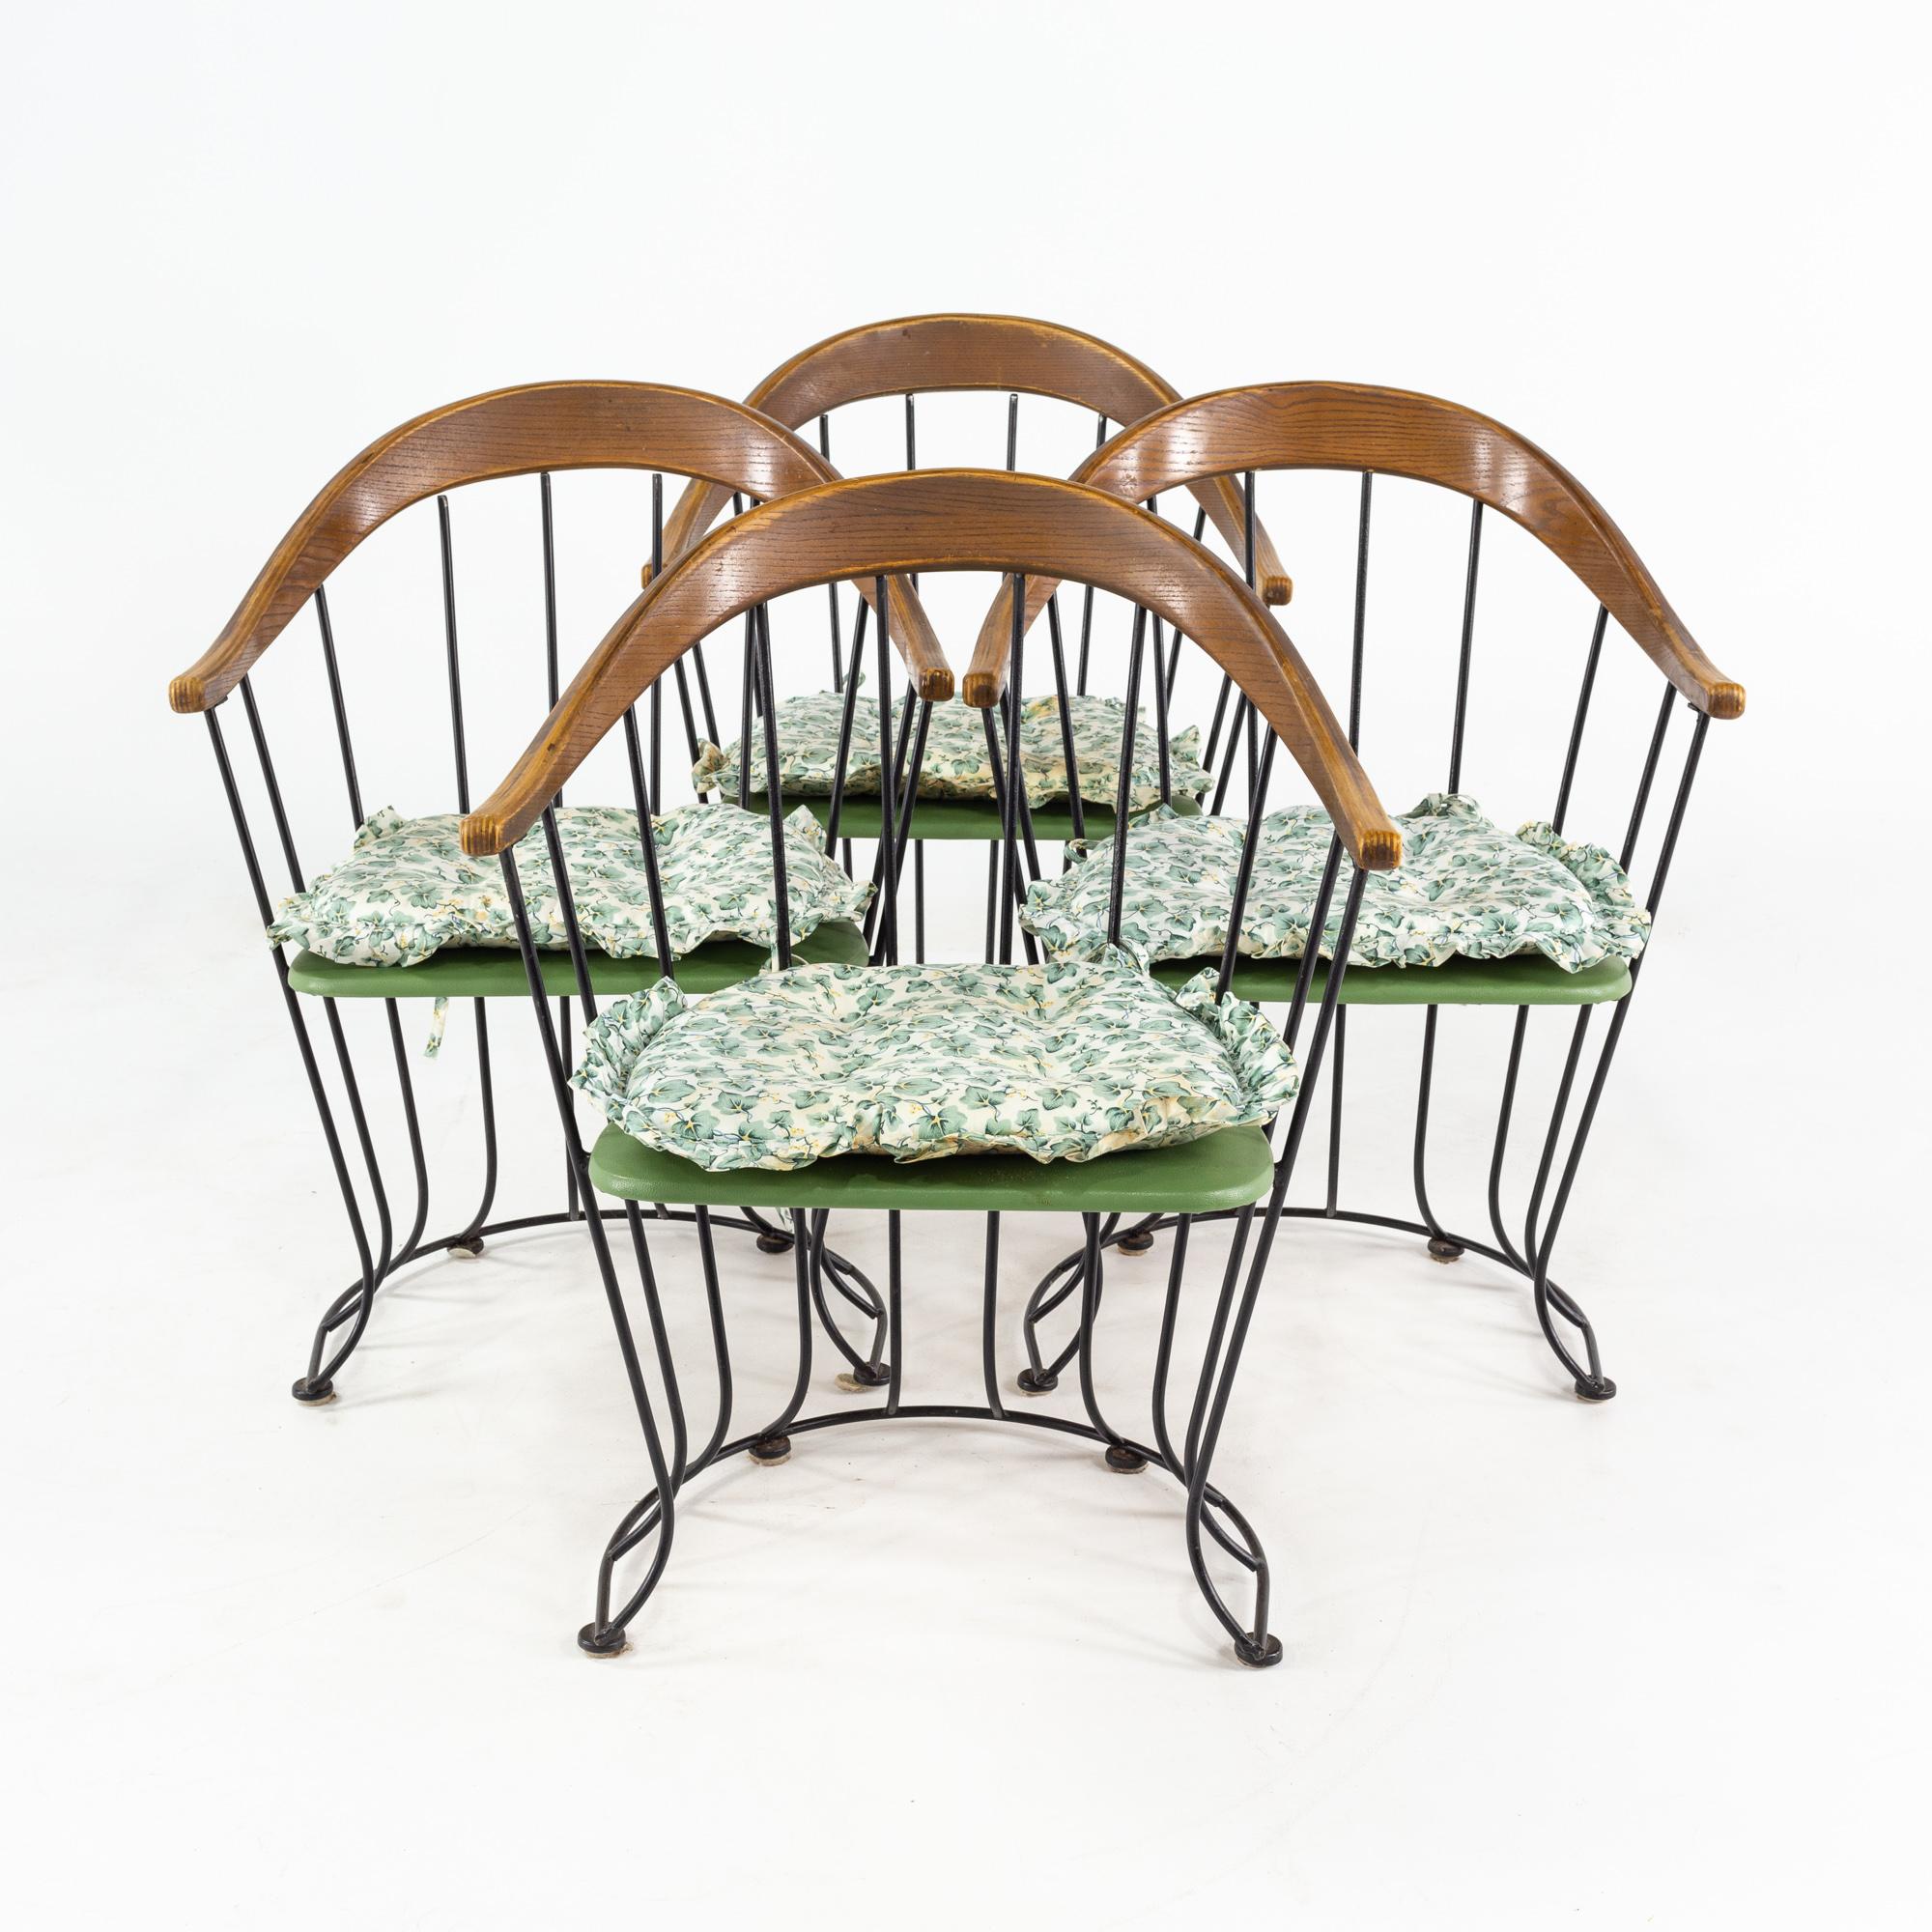 Richard McCarthy for Selrite style mid-century walnut & iron chairs - set of 4
Chaque chaise mesure : largeur 24 x profondeur 21 x hauteur 32.5, avec une hauteur d'assise de 18 pouces

Tous les meubles peuvent être obtenus dans ce que nous